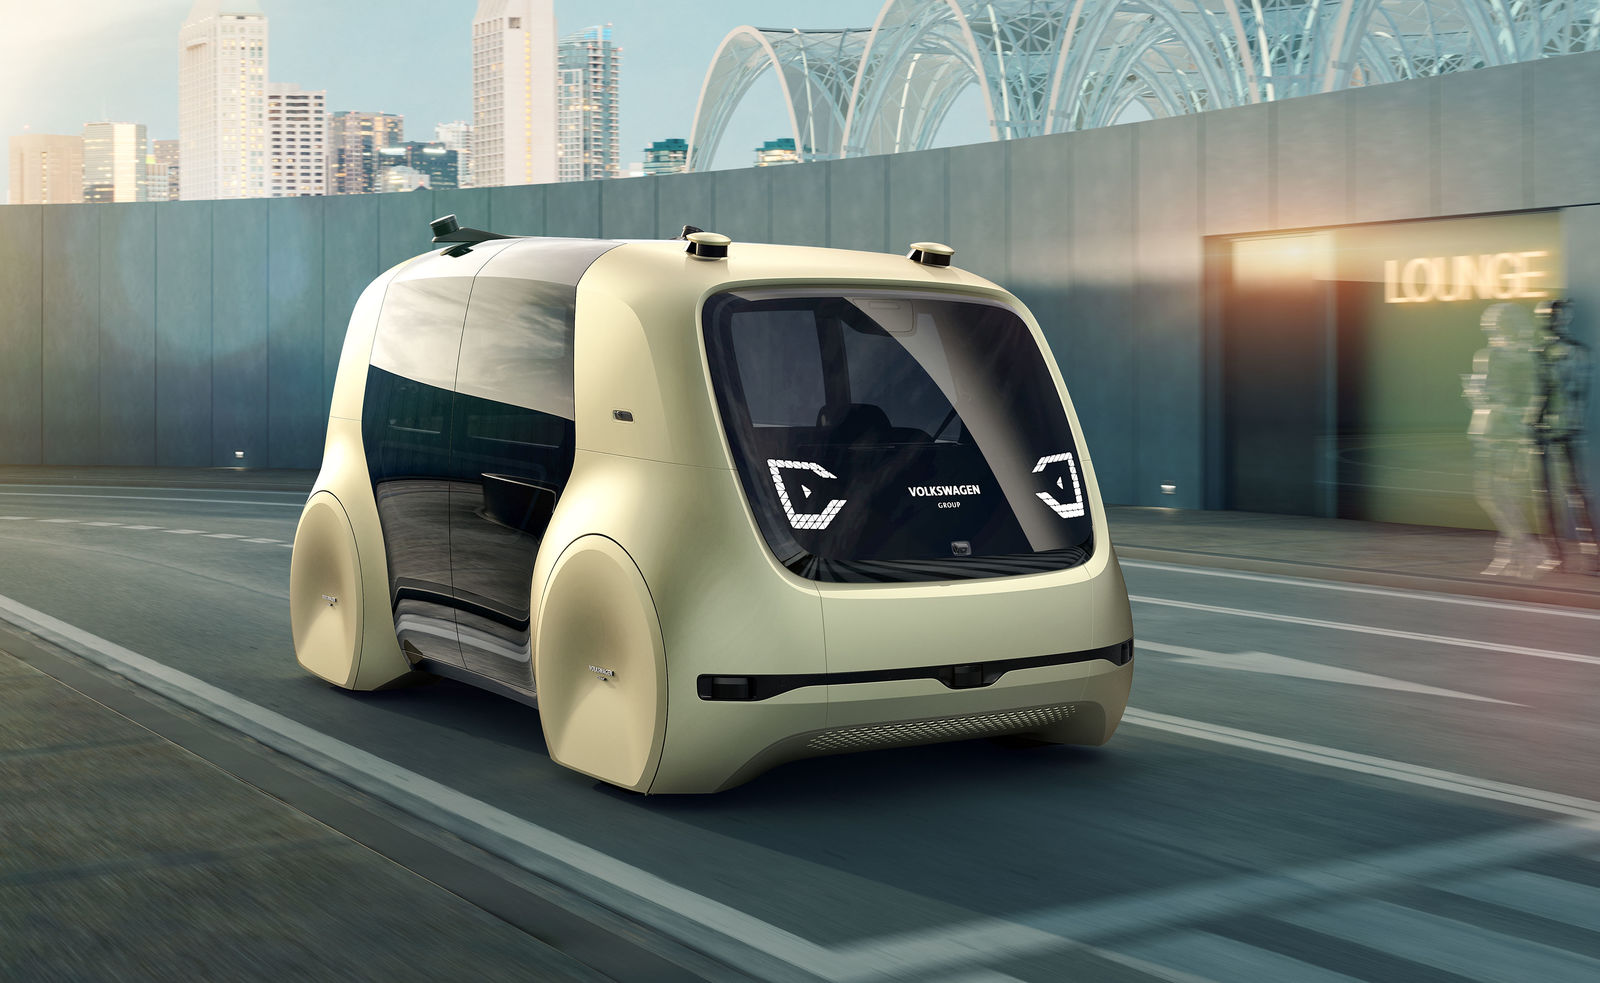 SEDRIC – Das Self-Driving Car des Volkswagen Konzerns wurde von Grund auf für autonomes Fahren entwickelt.